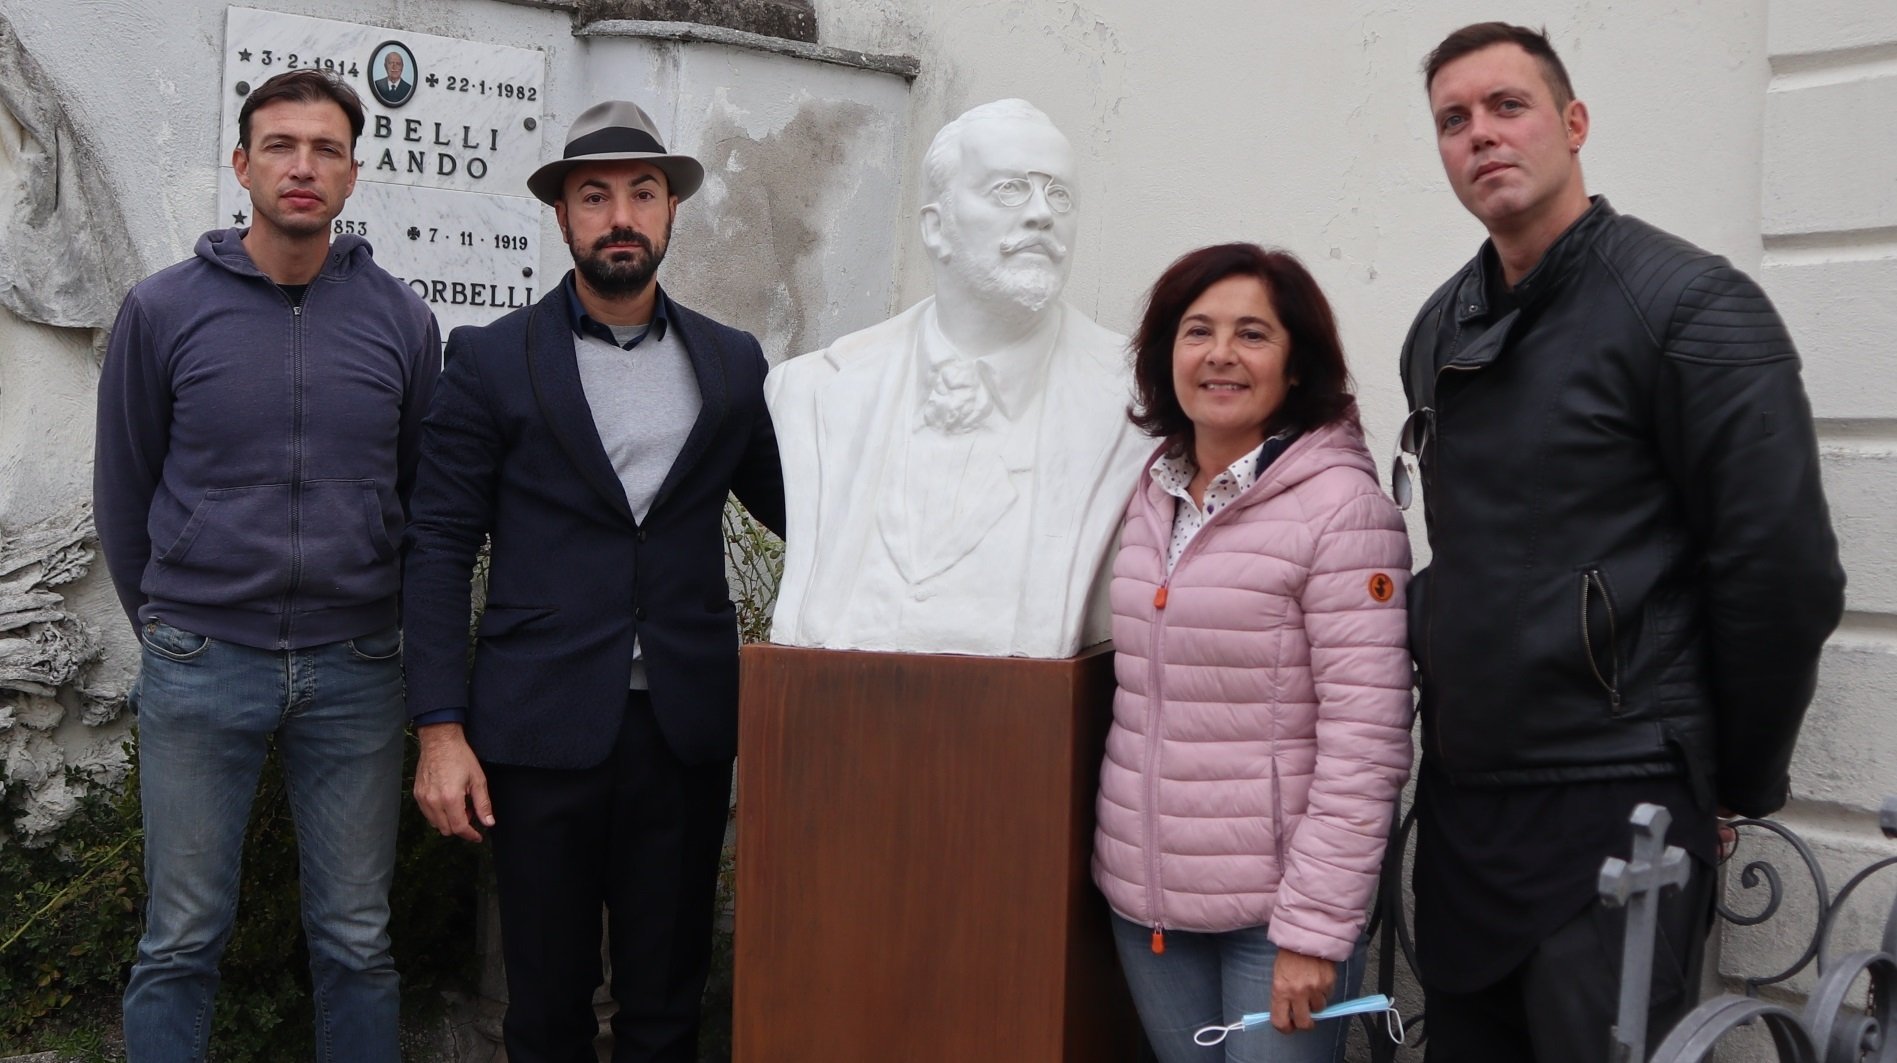 A Casale inaugurato un busto commemorativo dedicato ad Angelo Morbelli